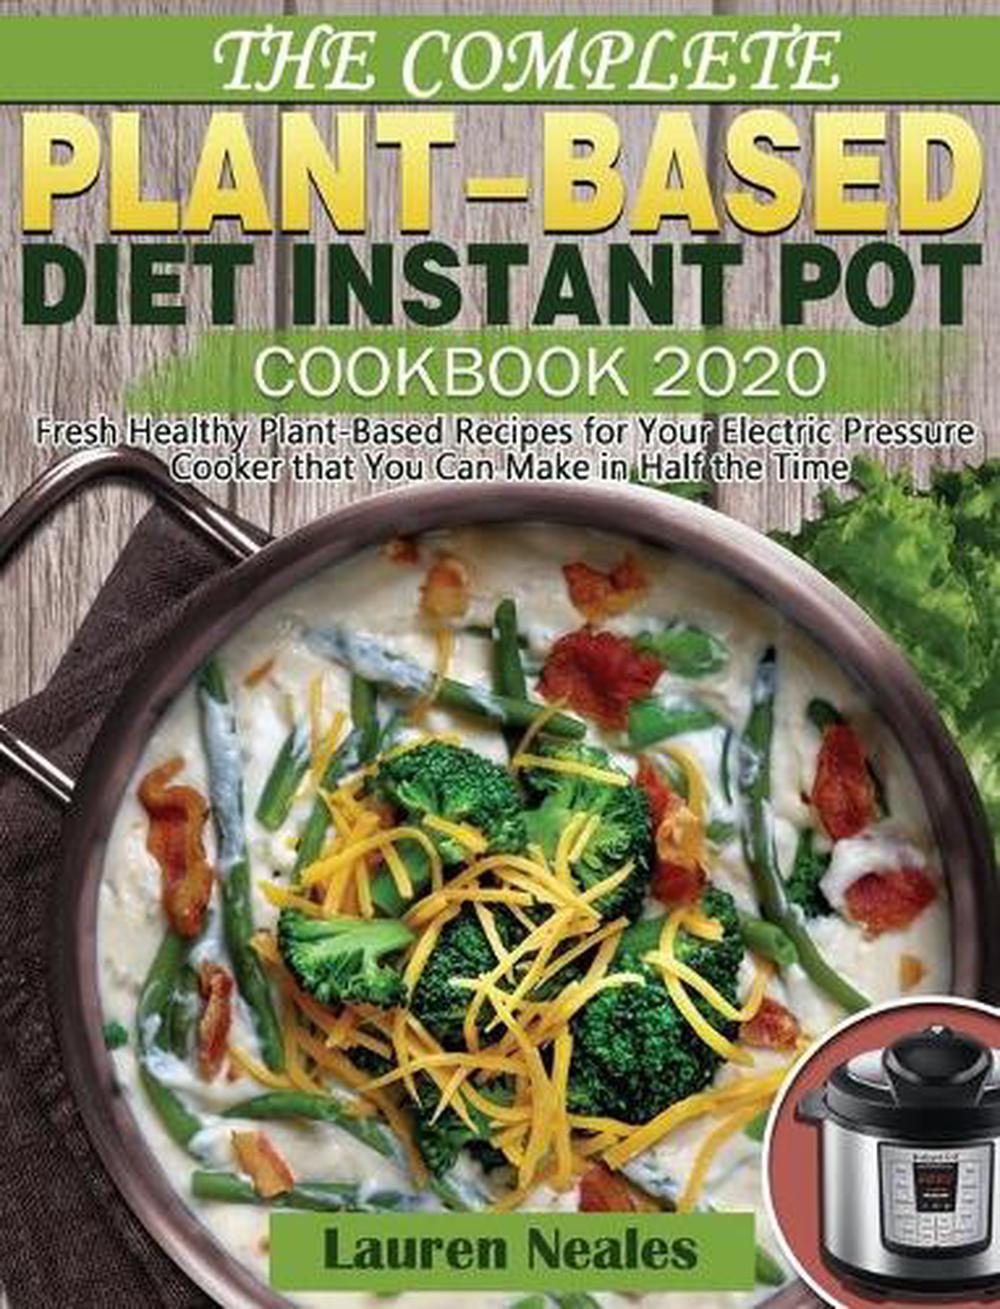 Best plant based cookbooks information